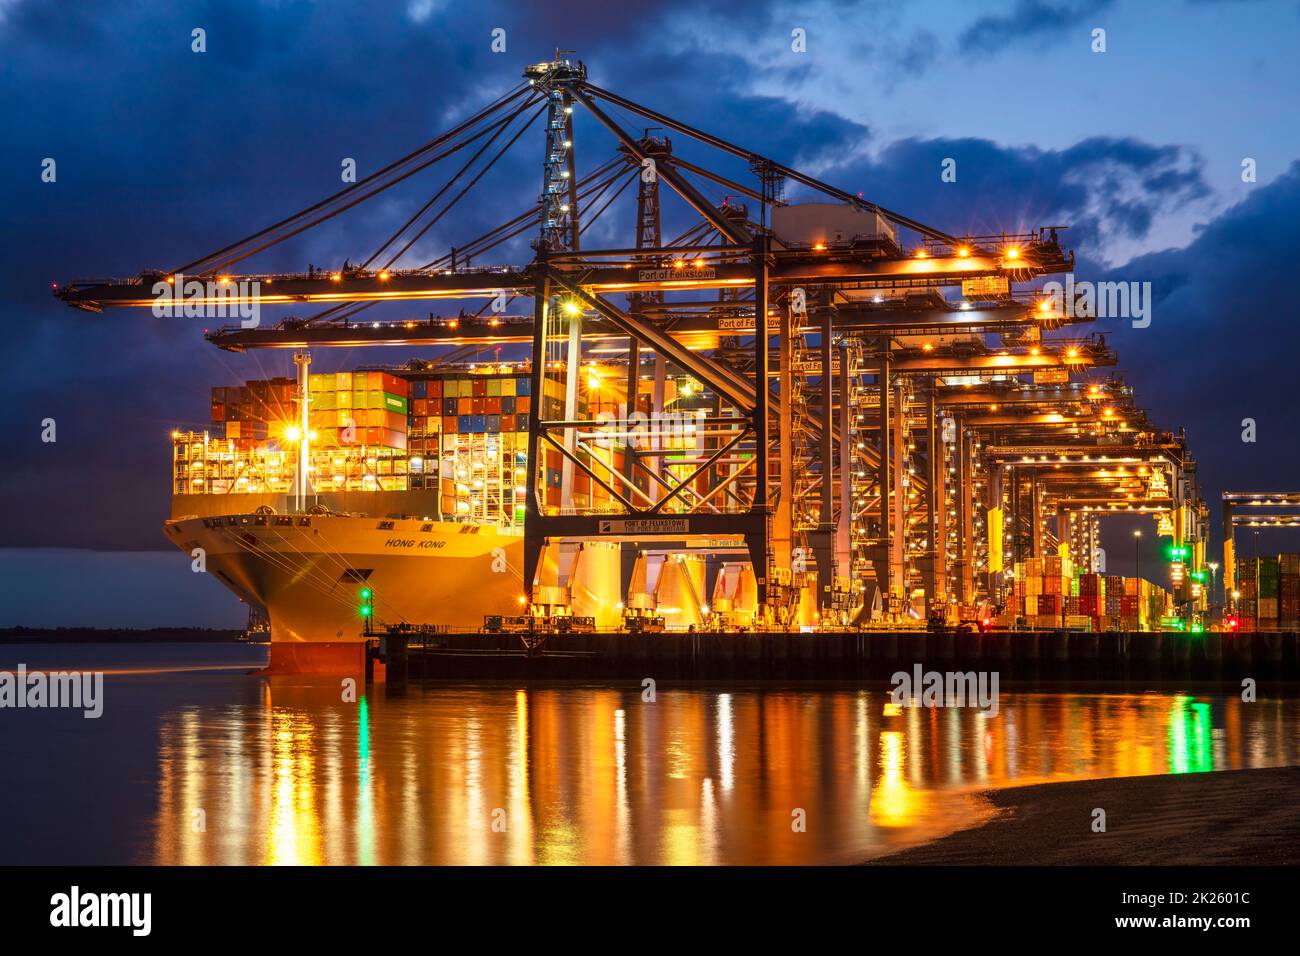 Hafen von Felixstowe Port Containerschiff mit Schiffscontainern im Dock bei Nacht Felixstowe Containerhafen Felixtowe Suffolk England GB Europa Stockfoto